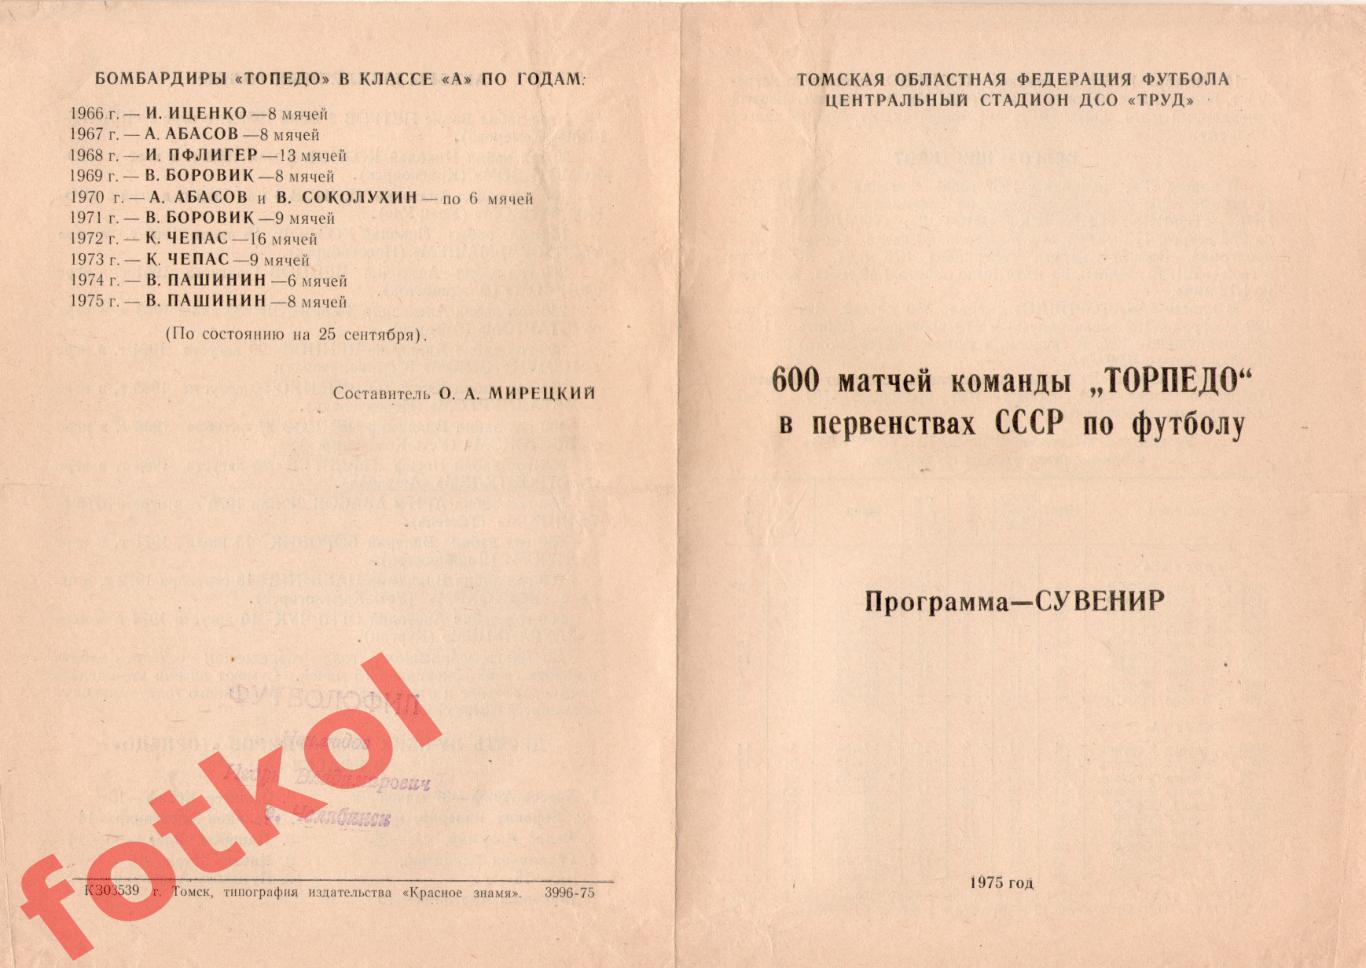 ТОРПЕДО Томск 1975 600 матчей программа - сувенир